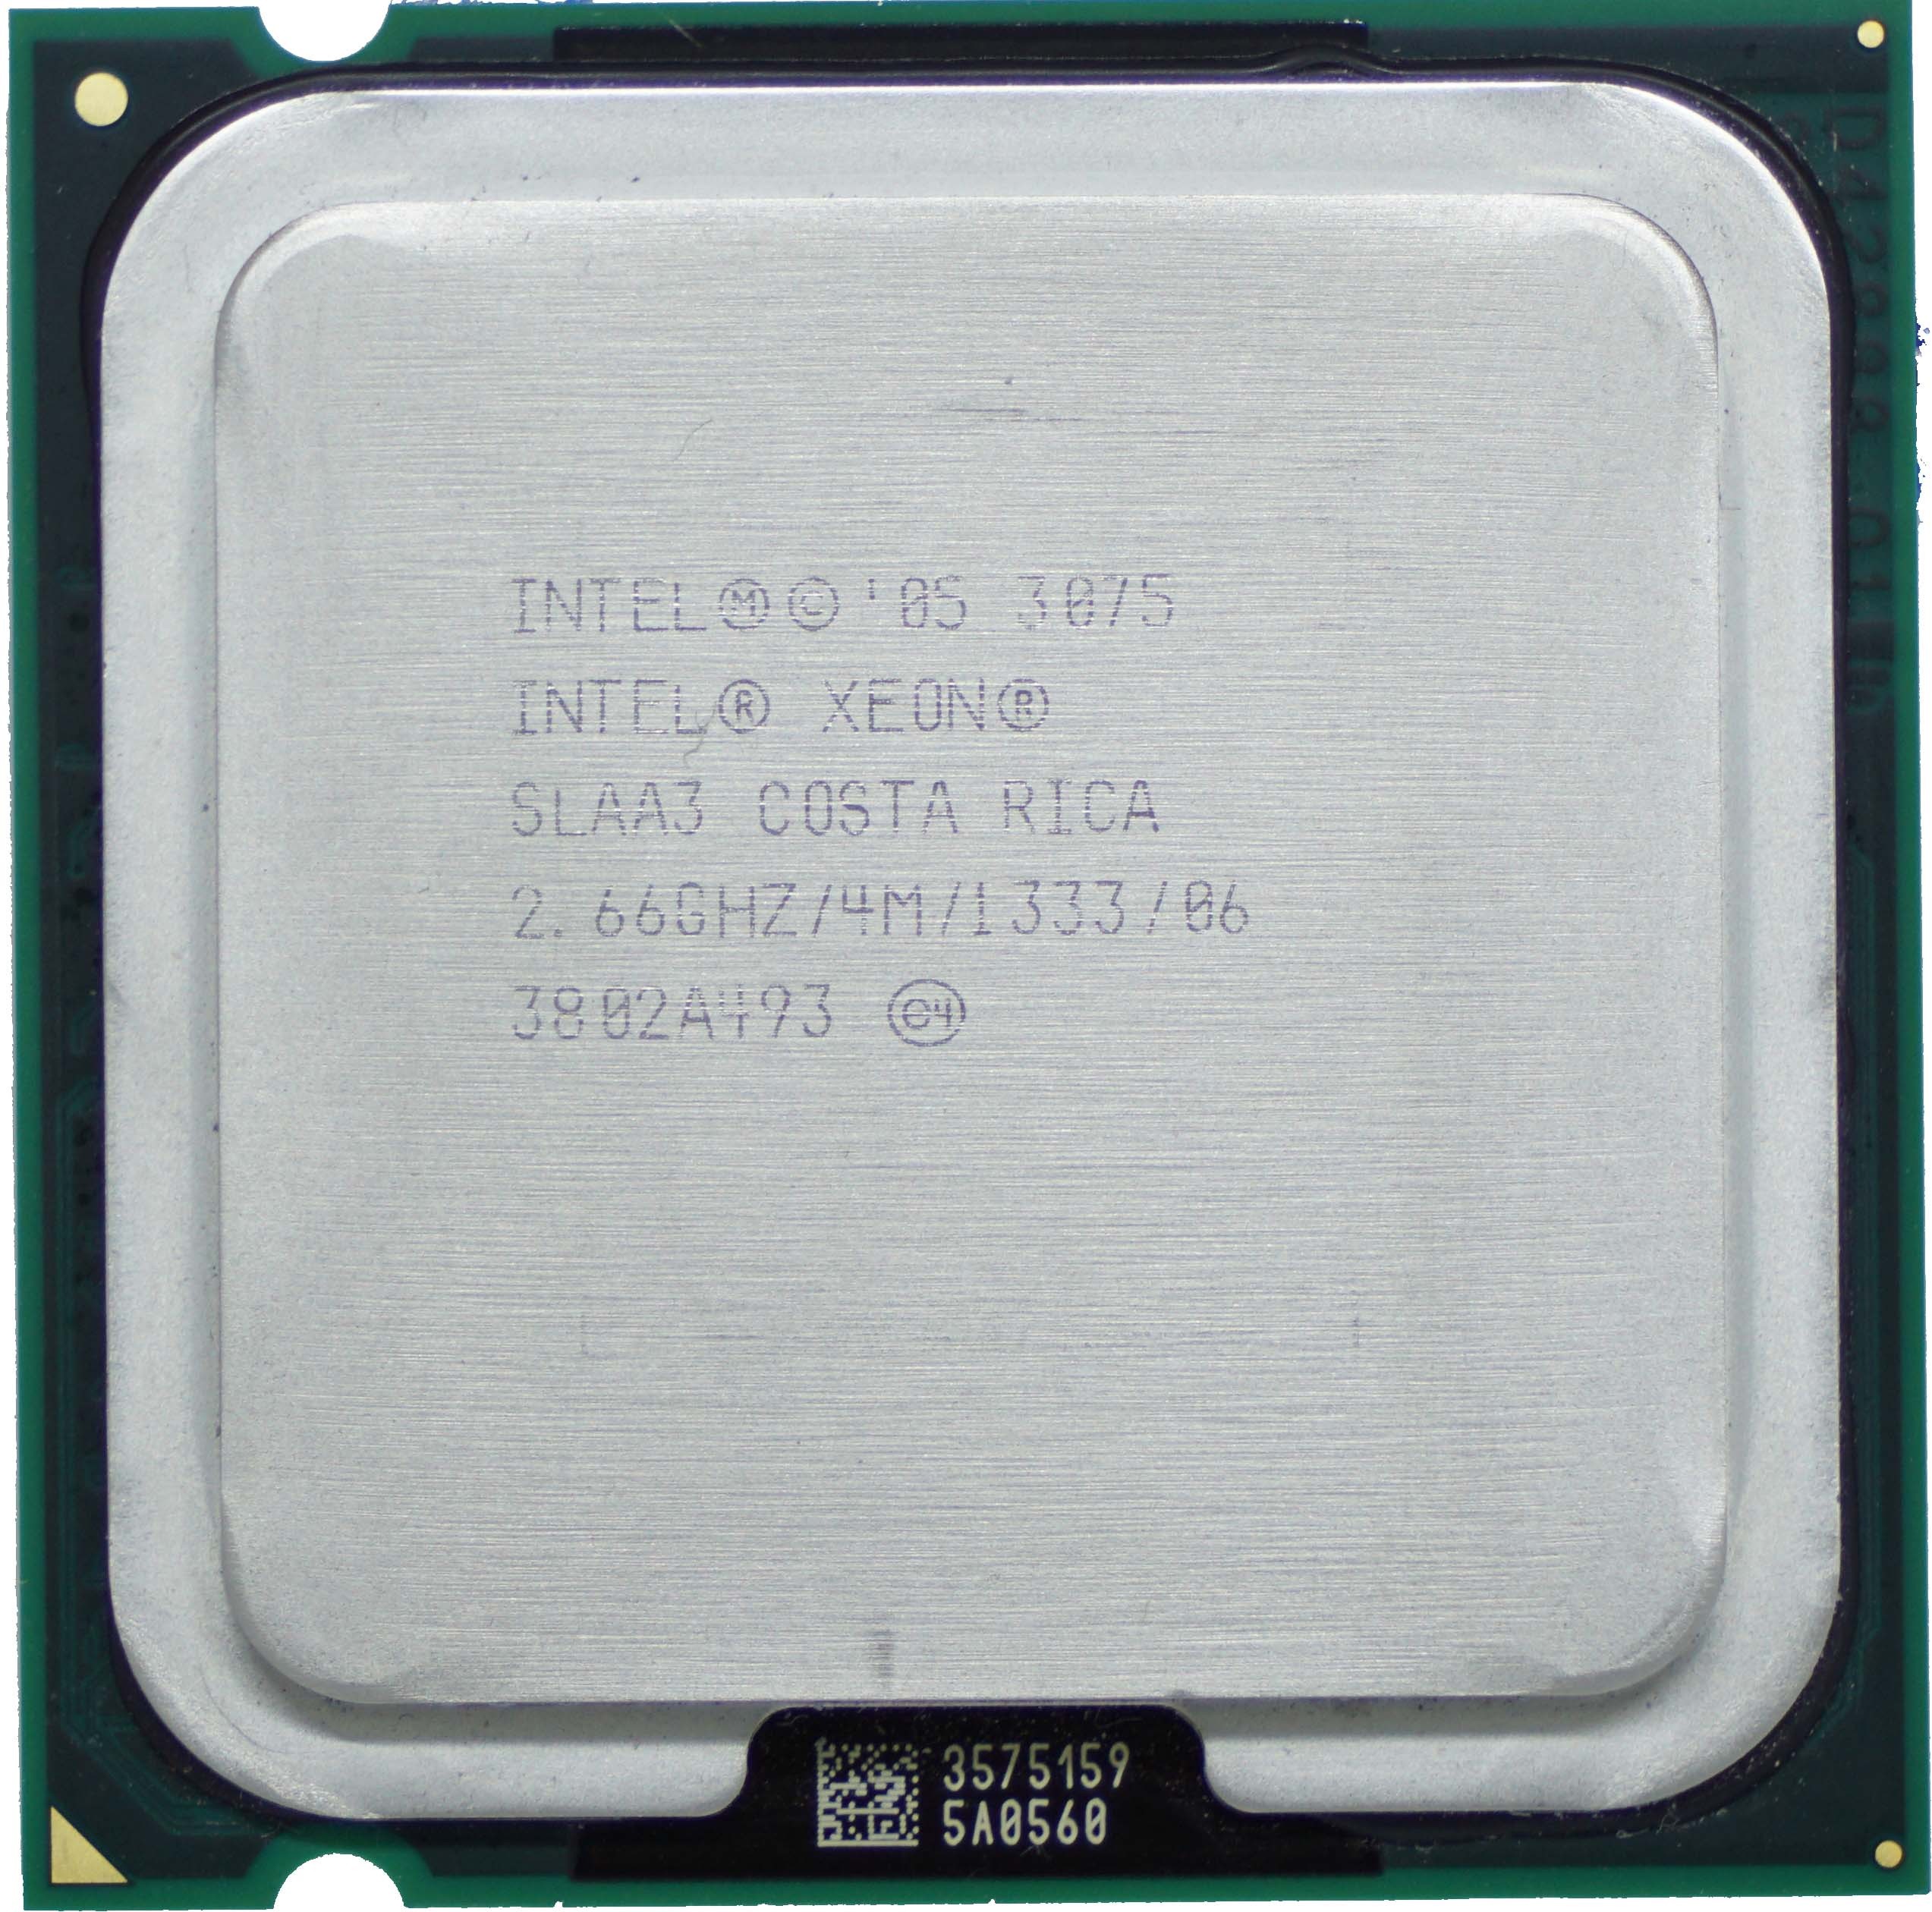 Intel Xeon 3075 (SLAA3) 2-Core 2.66GHz LGA775 4MB 65W CPU Processor